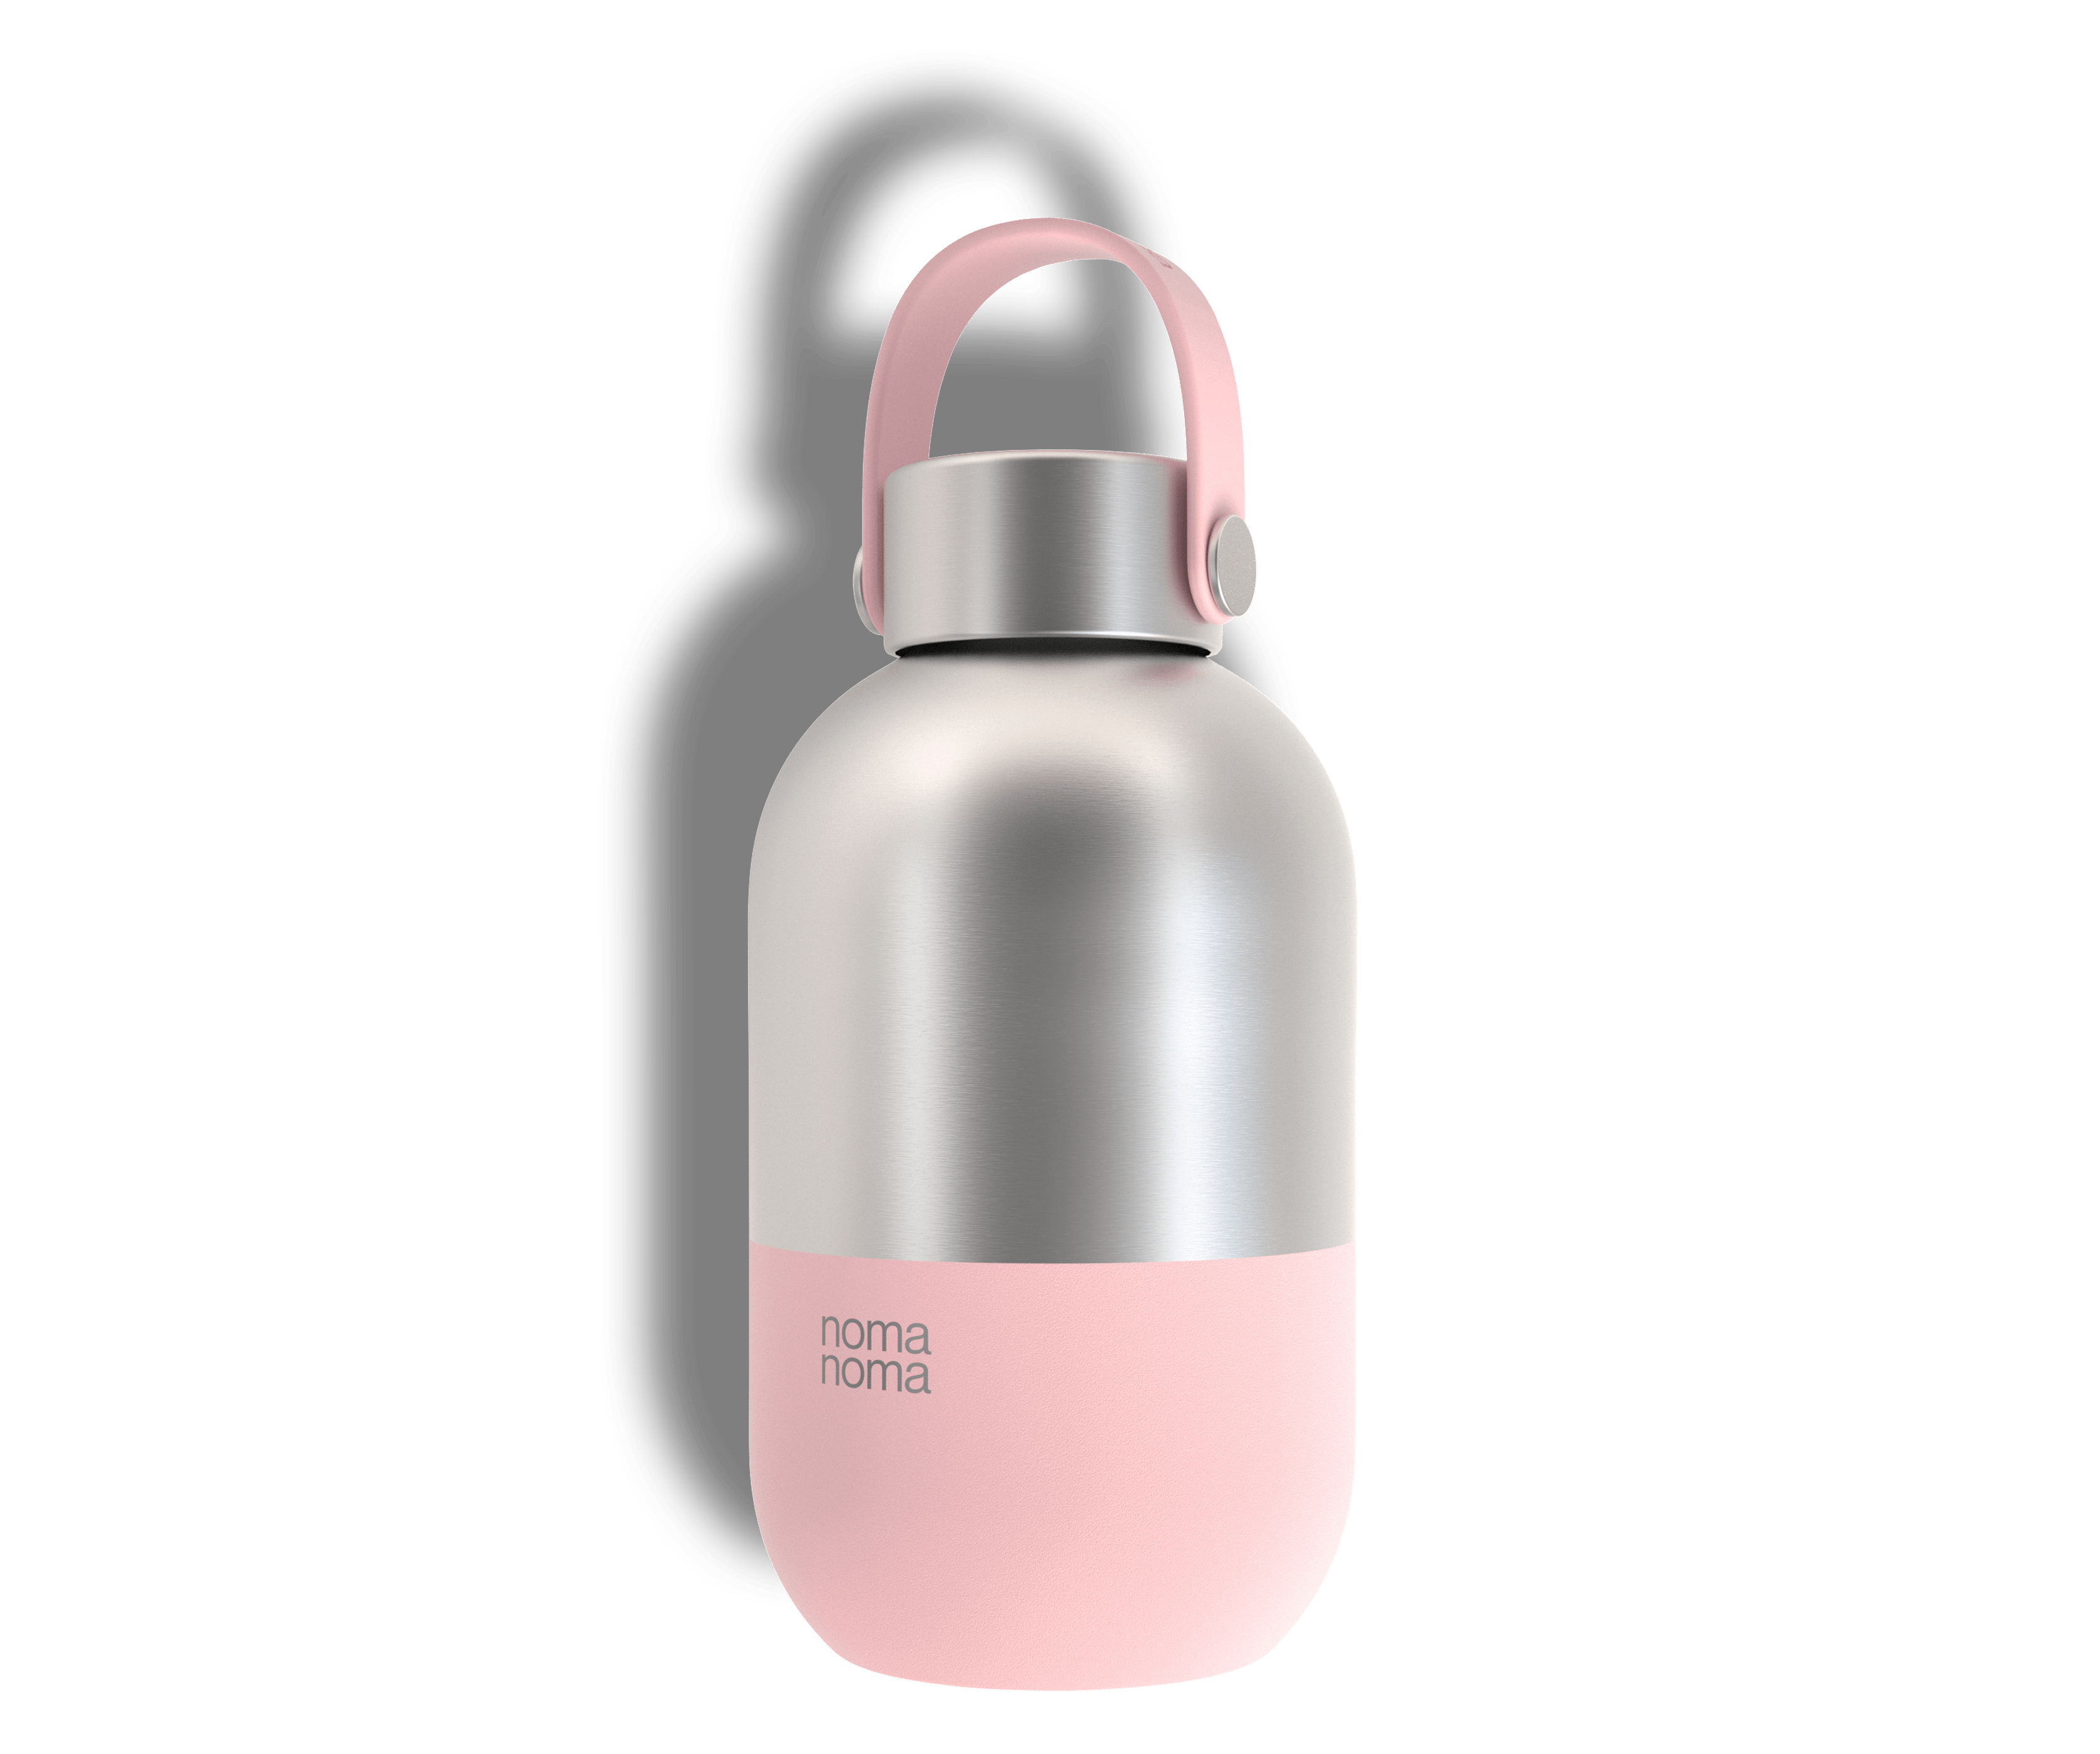 Die noma noma 0,5 l Wasserflasche in pink